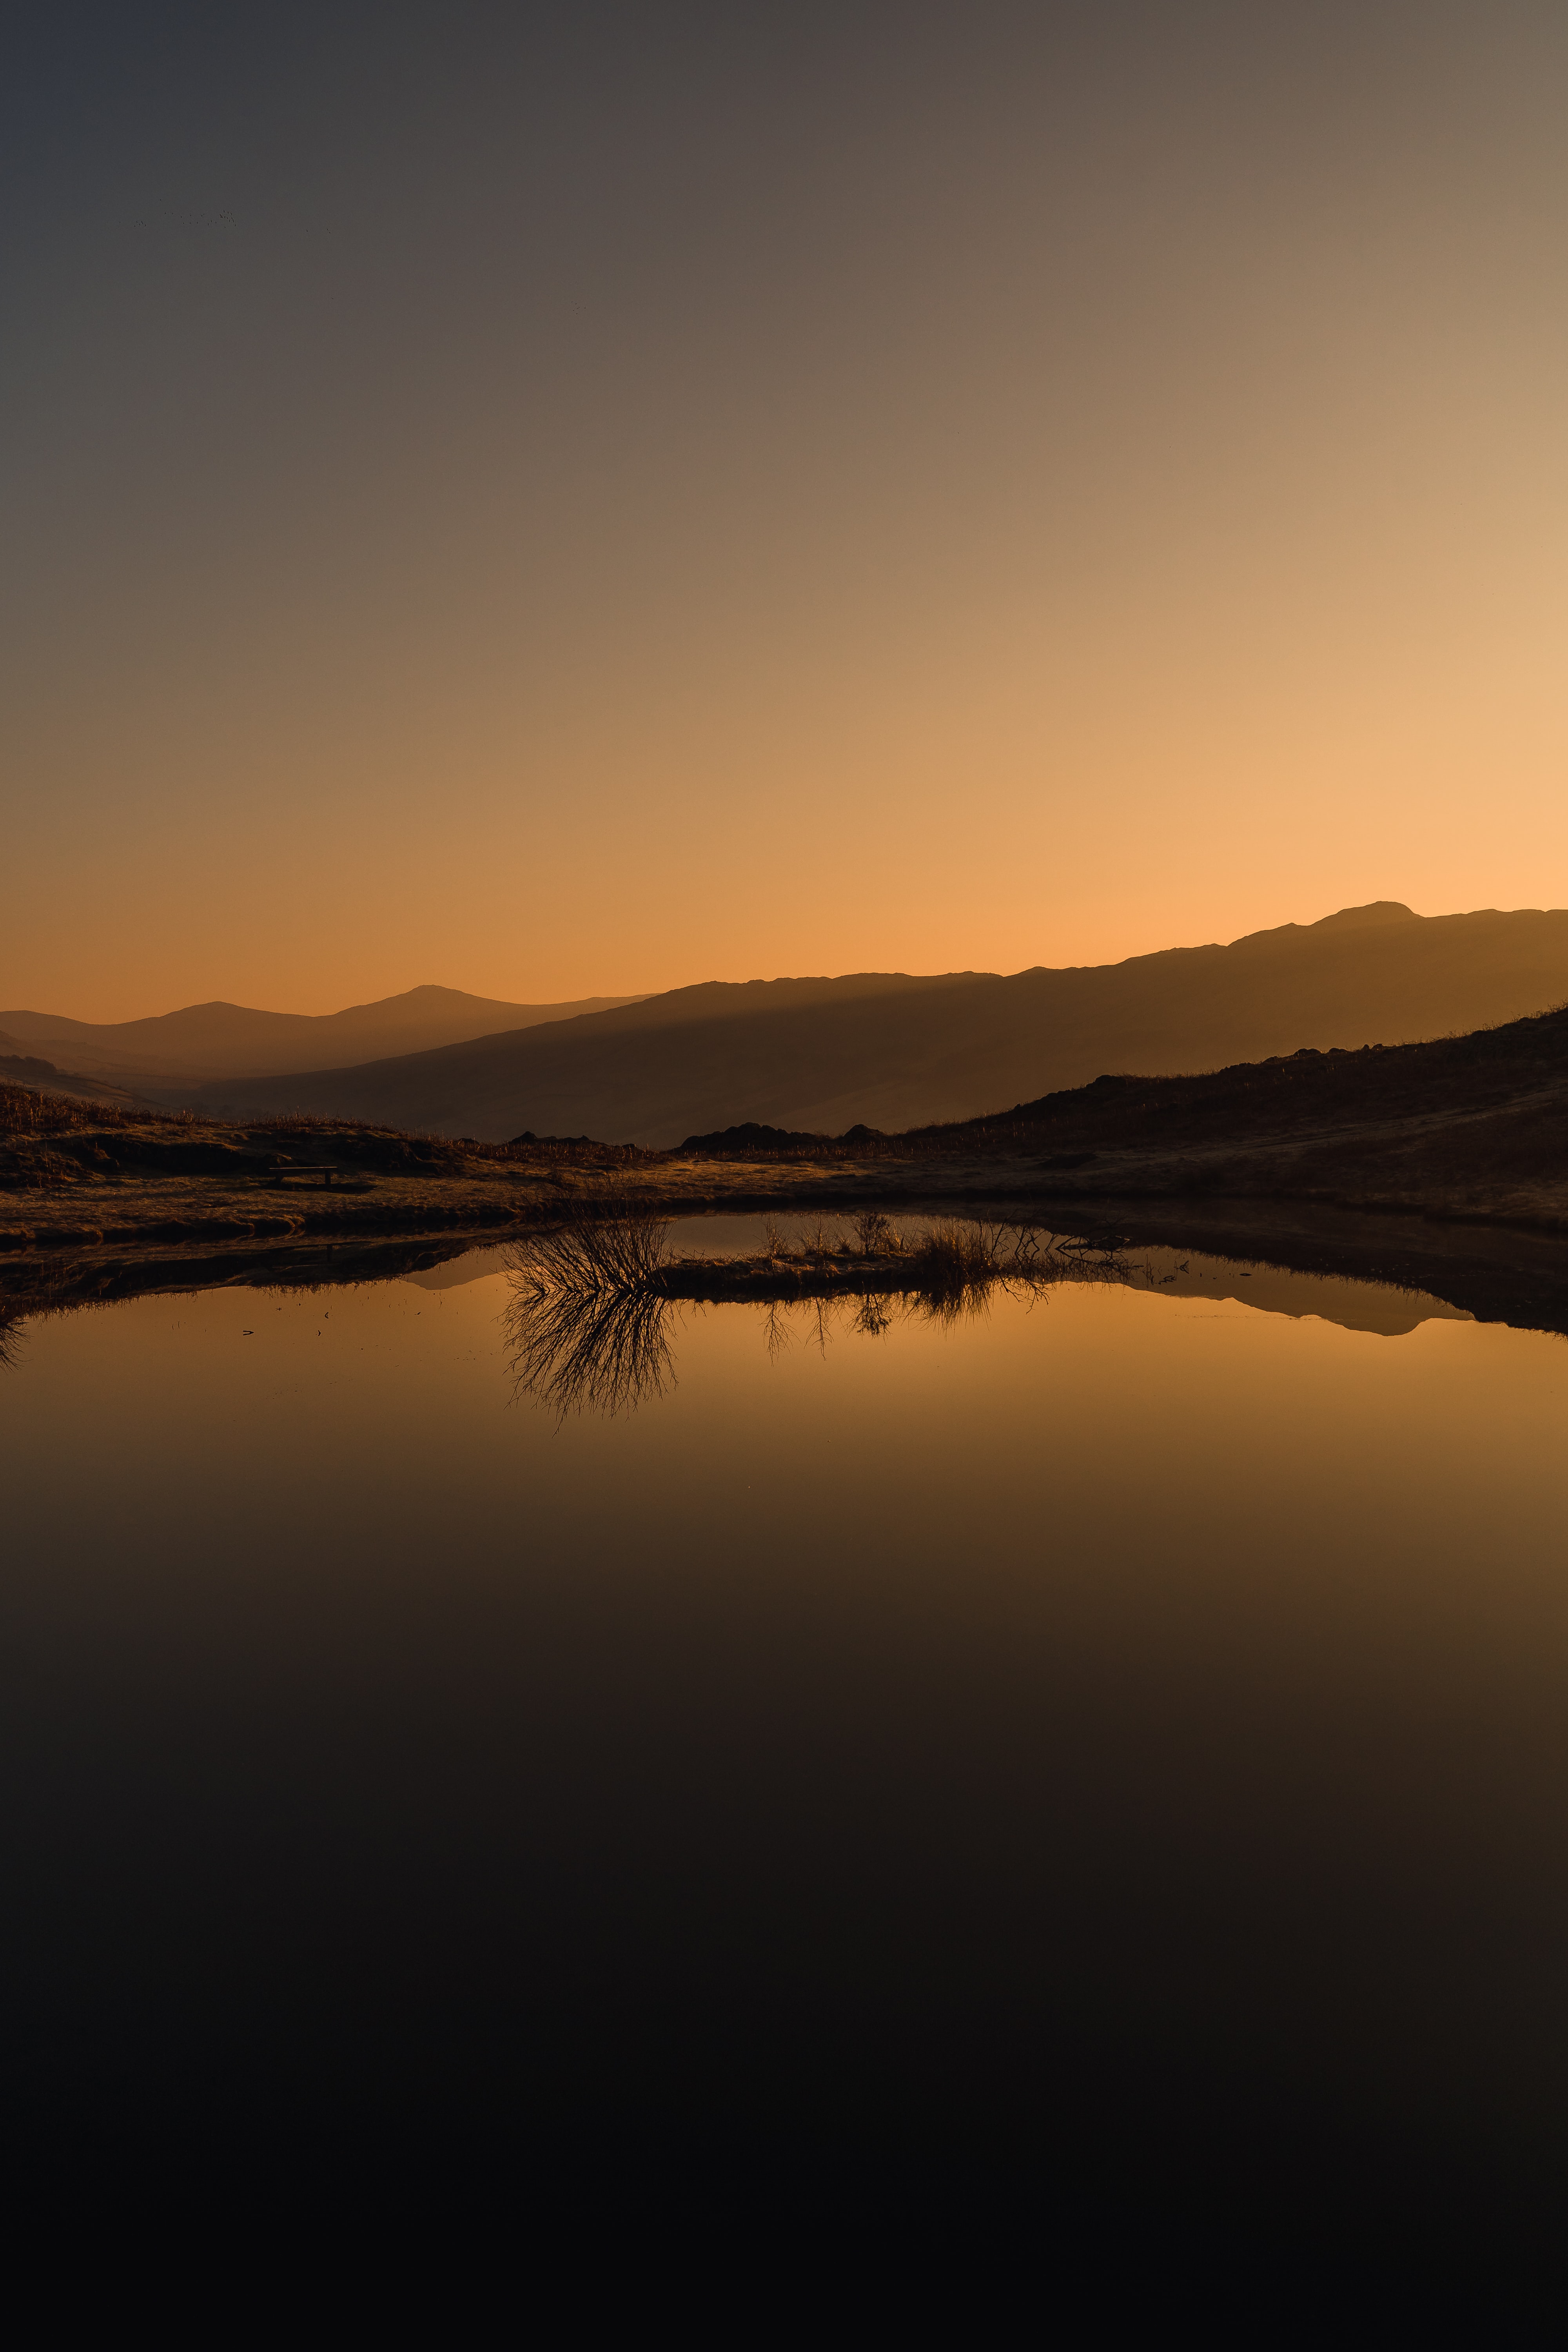 landscape, sunset, nature, mountains, lake, reflection phone background